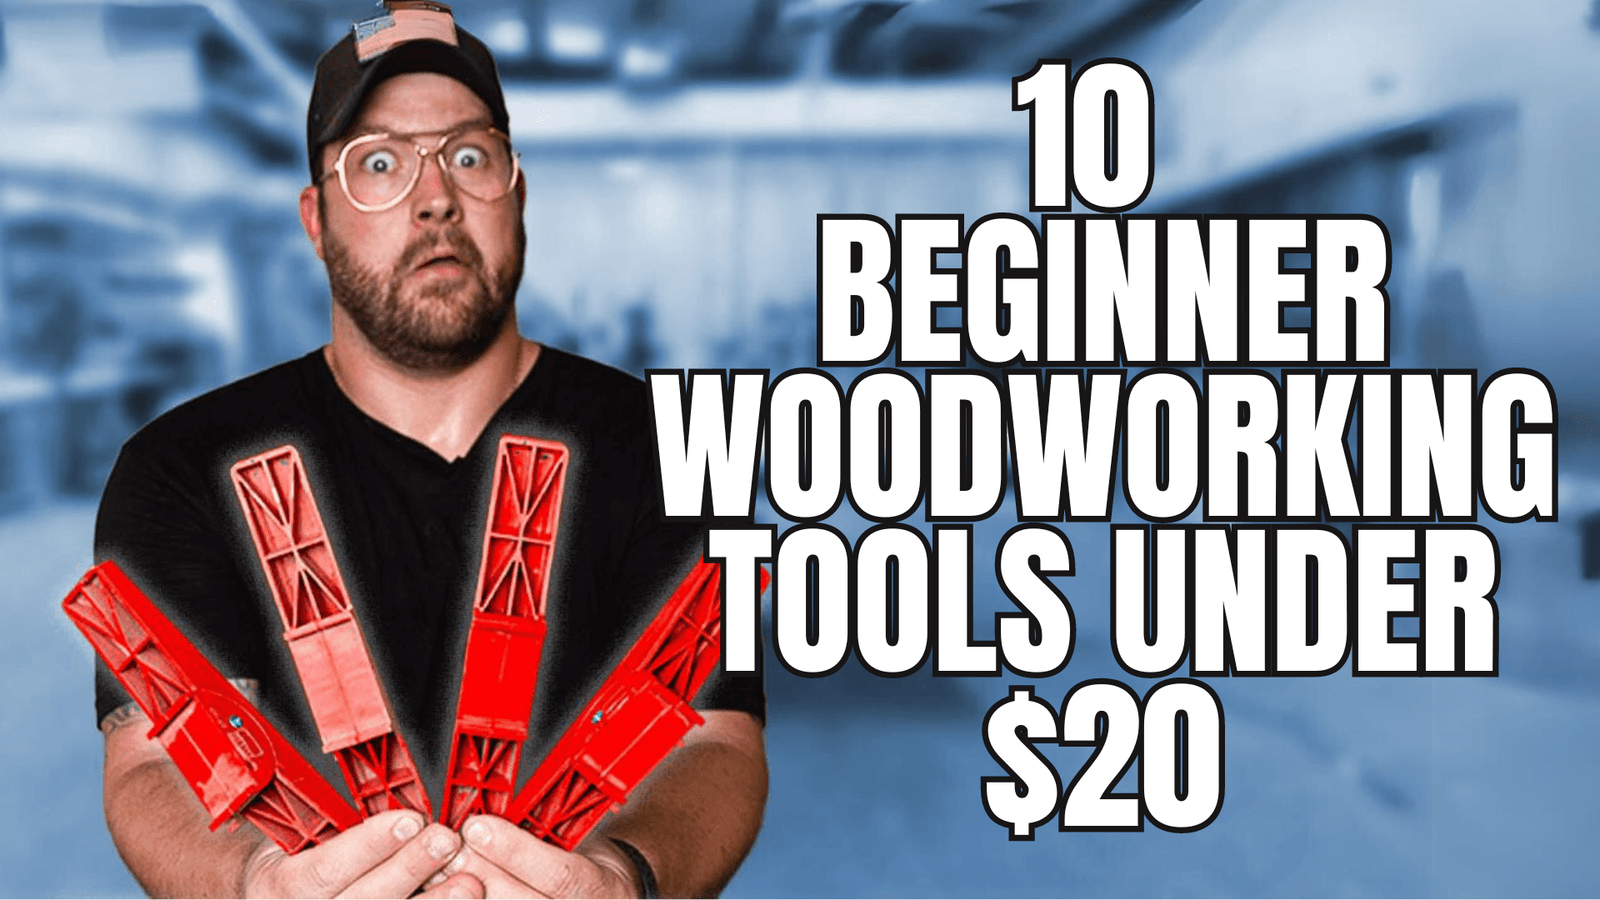 10 Beginner Woodworking Tools under $20